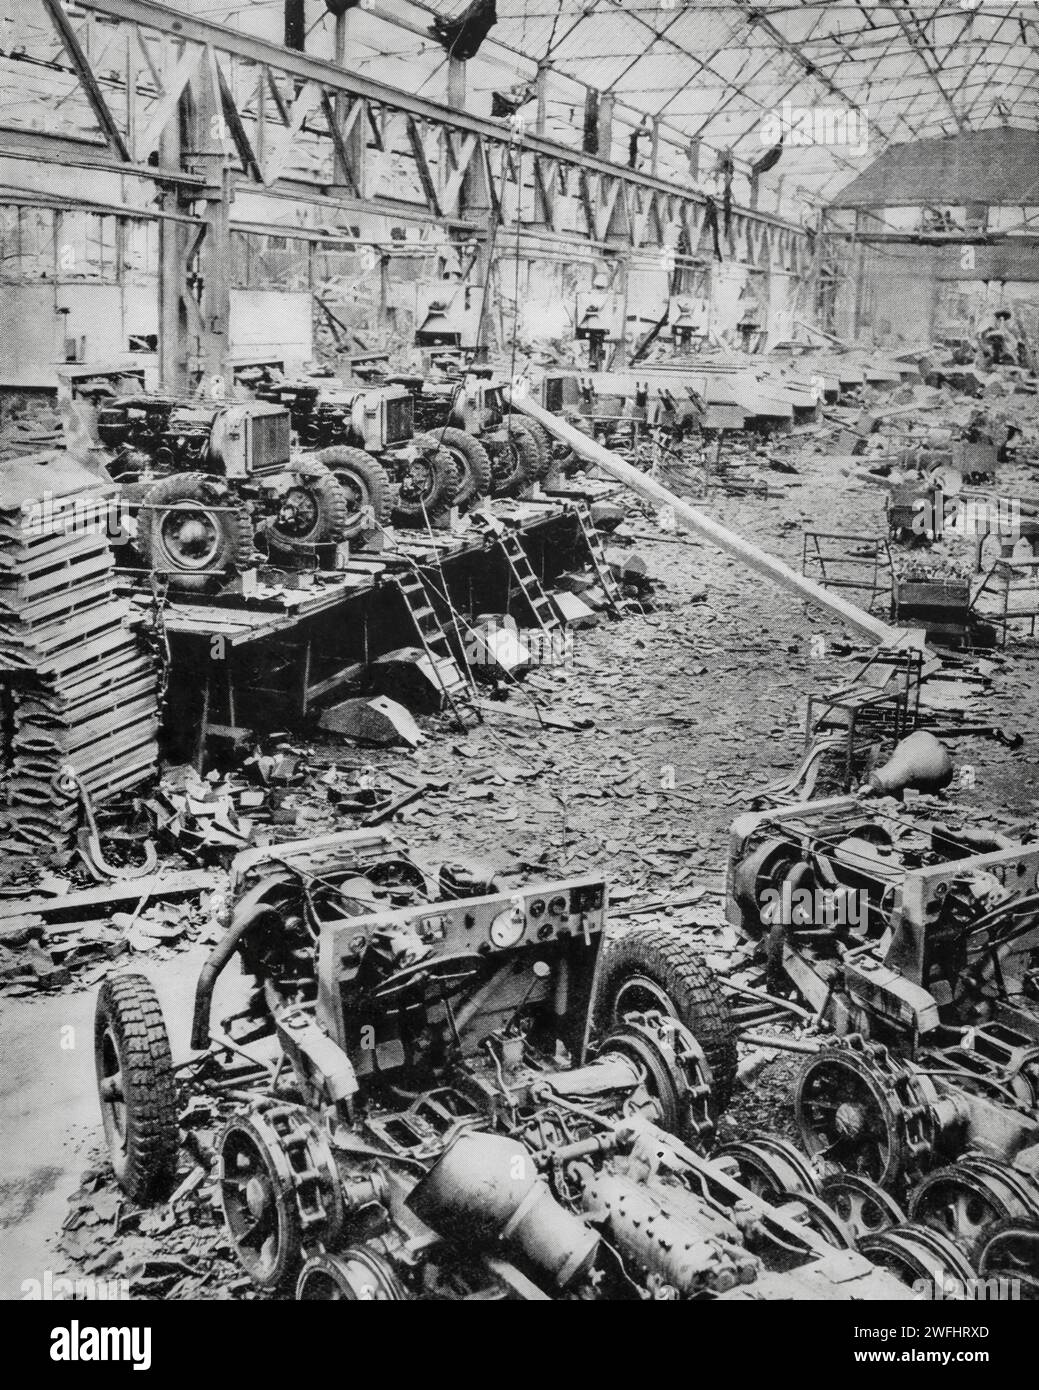 Lorsque les troupes alliées sont entrées à Hamm dans le district de la Ruhr du nord de l'Allemagne en avril 1945, elles ont pu voir les effets des bombardements concentrés sur une usine de tracteurs pendant les derniers jours de la Seconde Guerre mondiale. Banque D'Images